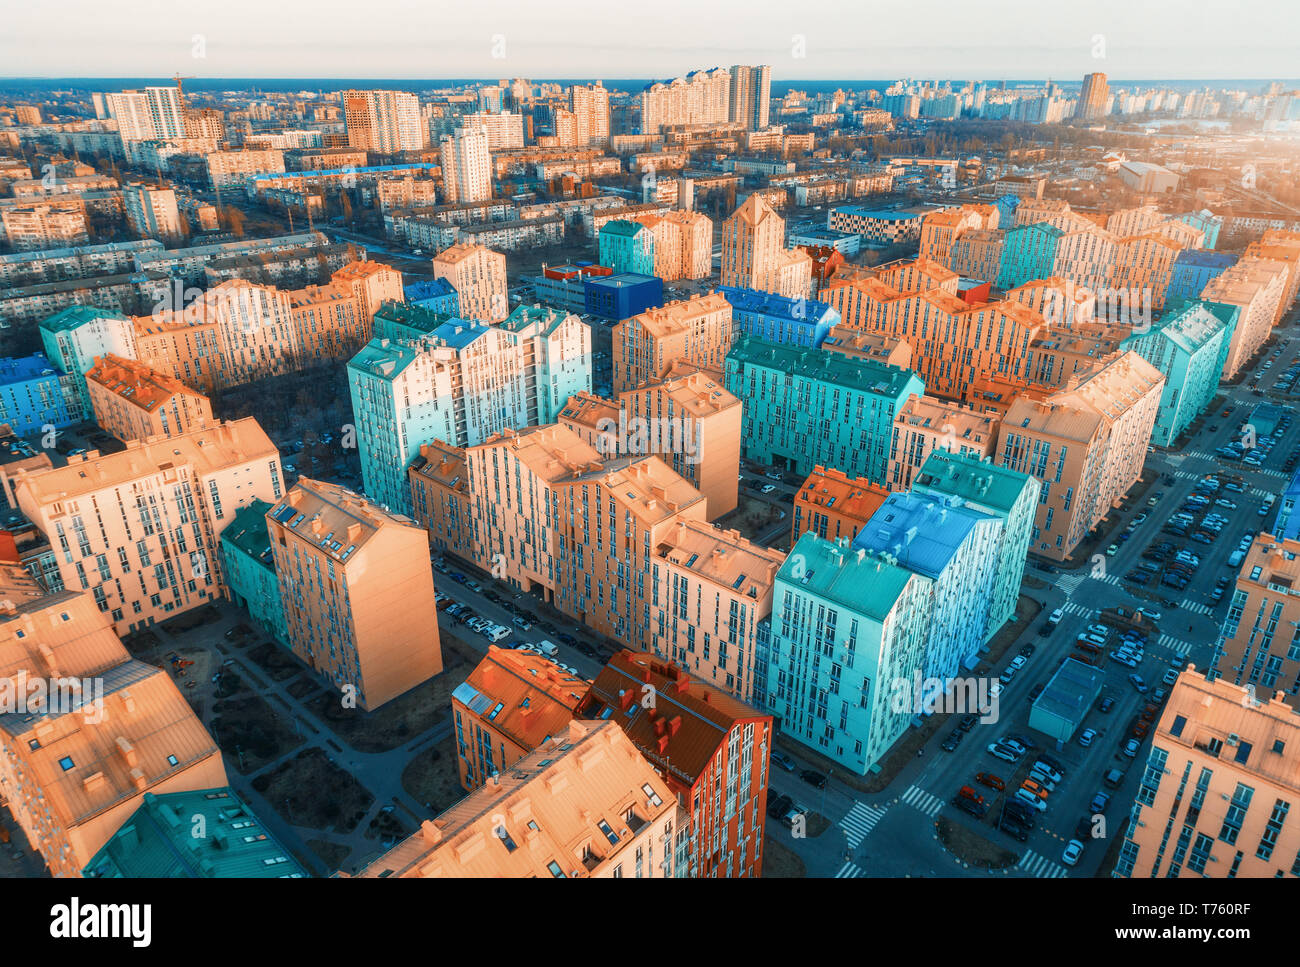 Vista aerea dei colorati edifici in città europea al tramonto. Paesaggio con case variopinte, auto sulla strada a Kiev in Ucraina. Vista dall'alto. U Foto Stock